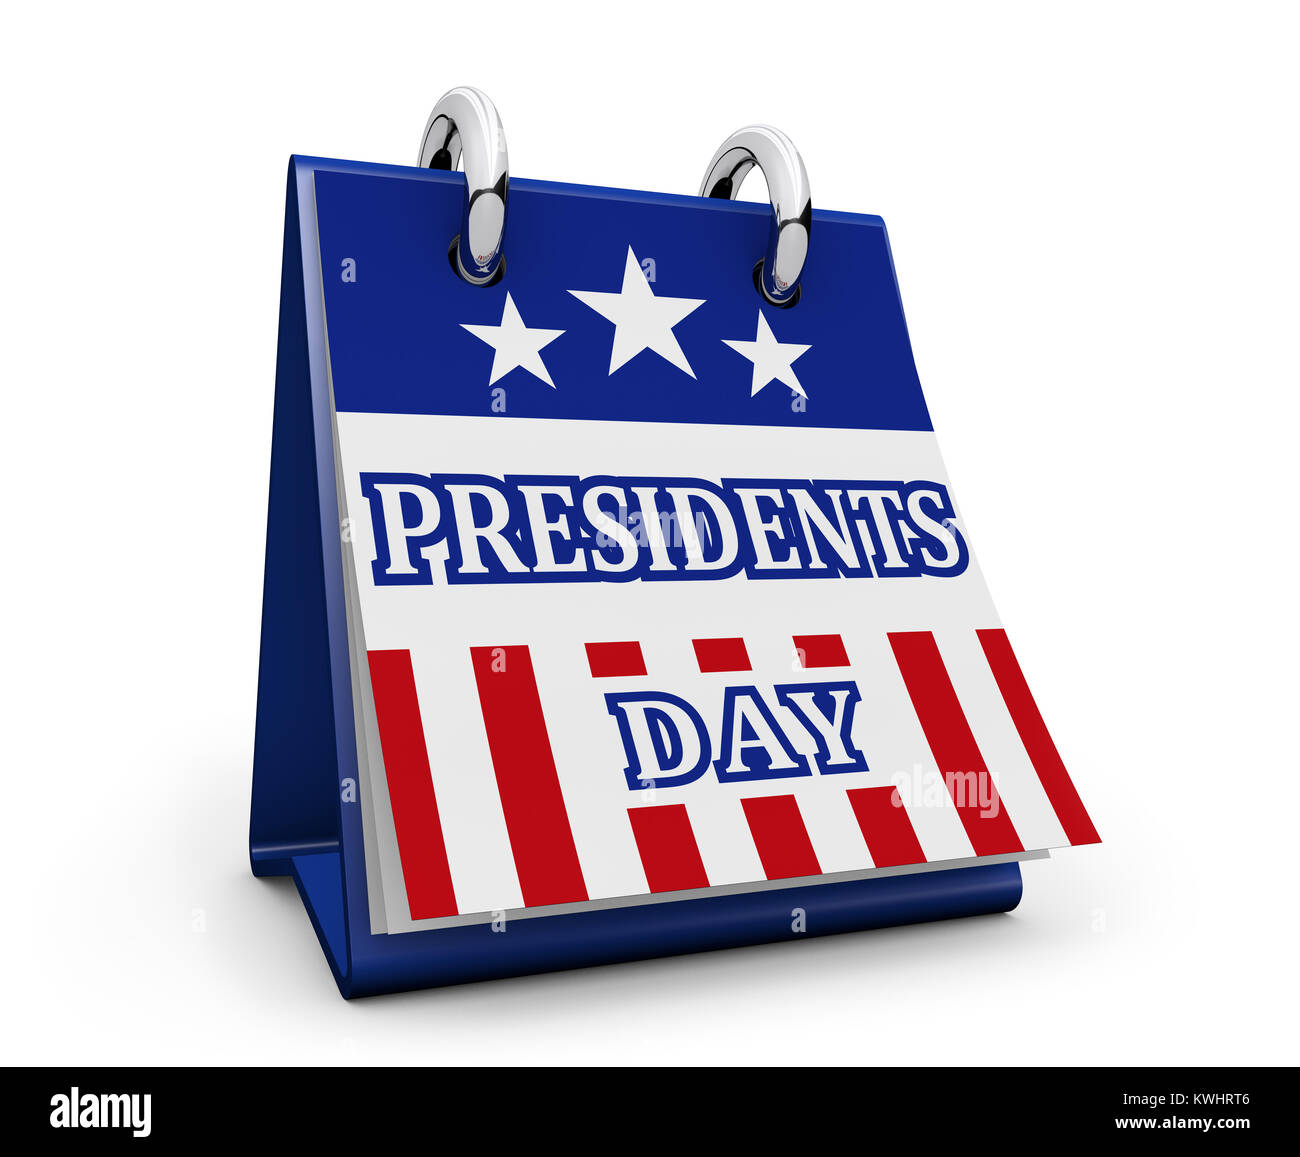 Präsidenten Tag USA Urlaub Konzept mit amerikanischer Flagge Farben und Zeichen auf dem Schreibtisch Kalender 3D-Abbildung auf weißen Hintergrund. Stockfoto